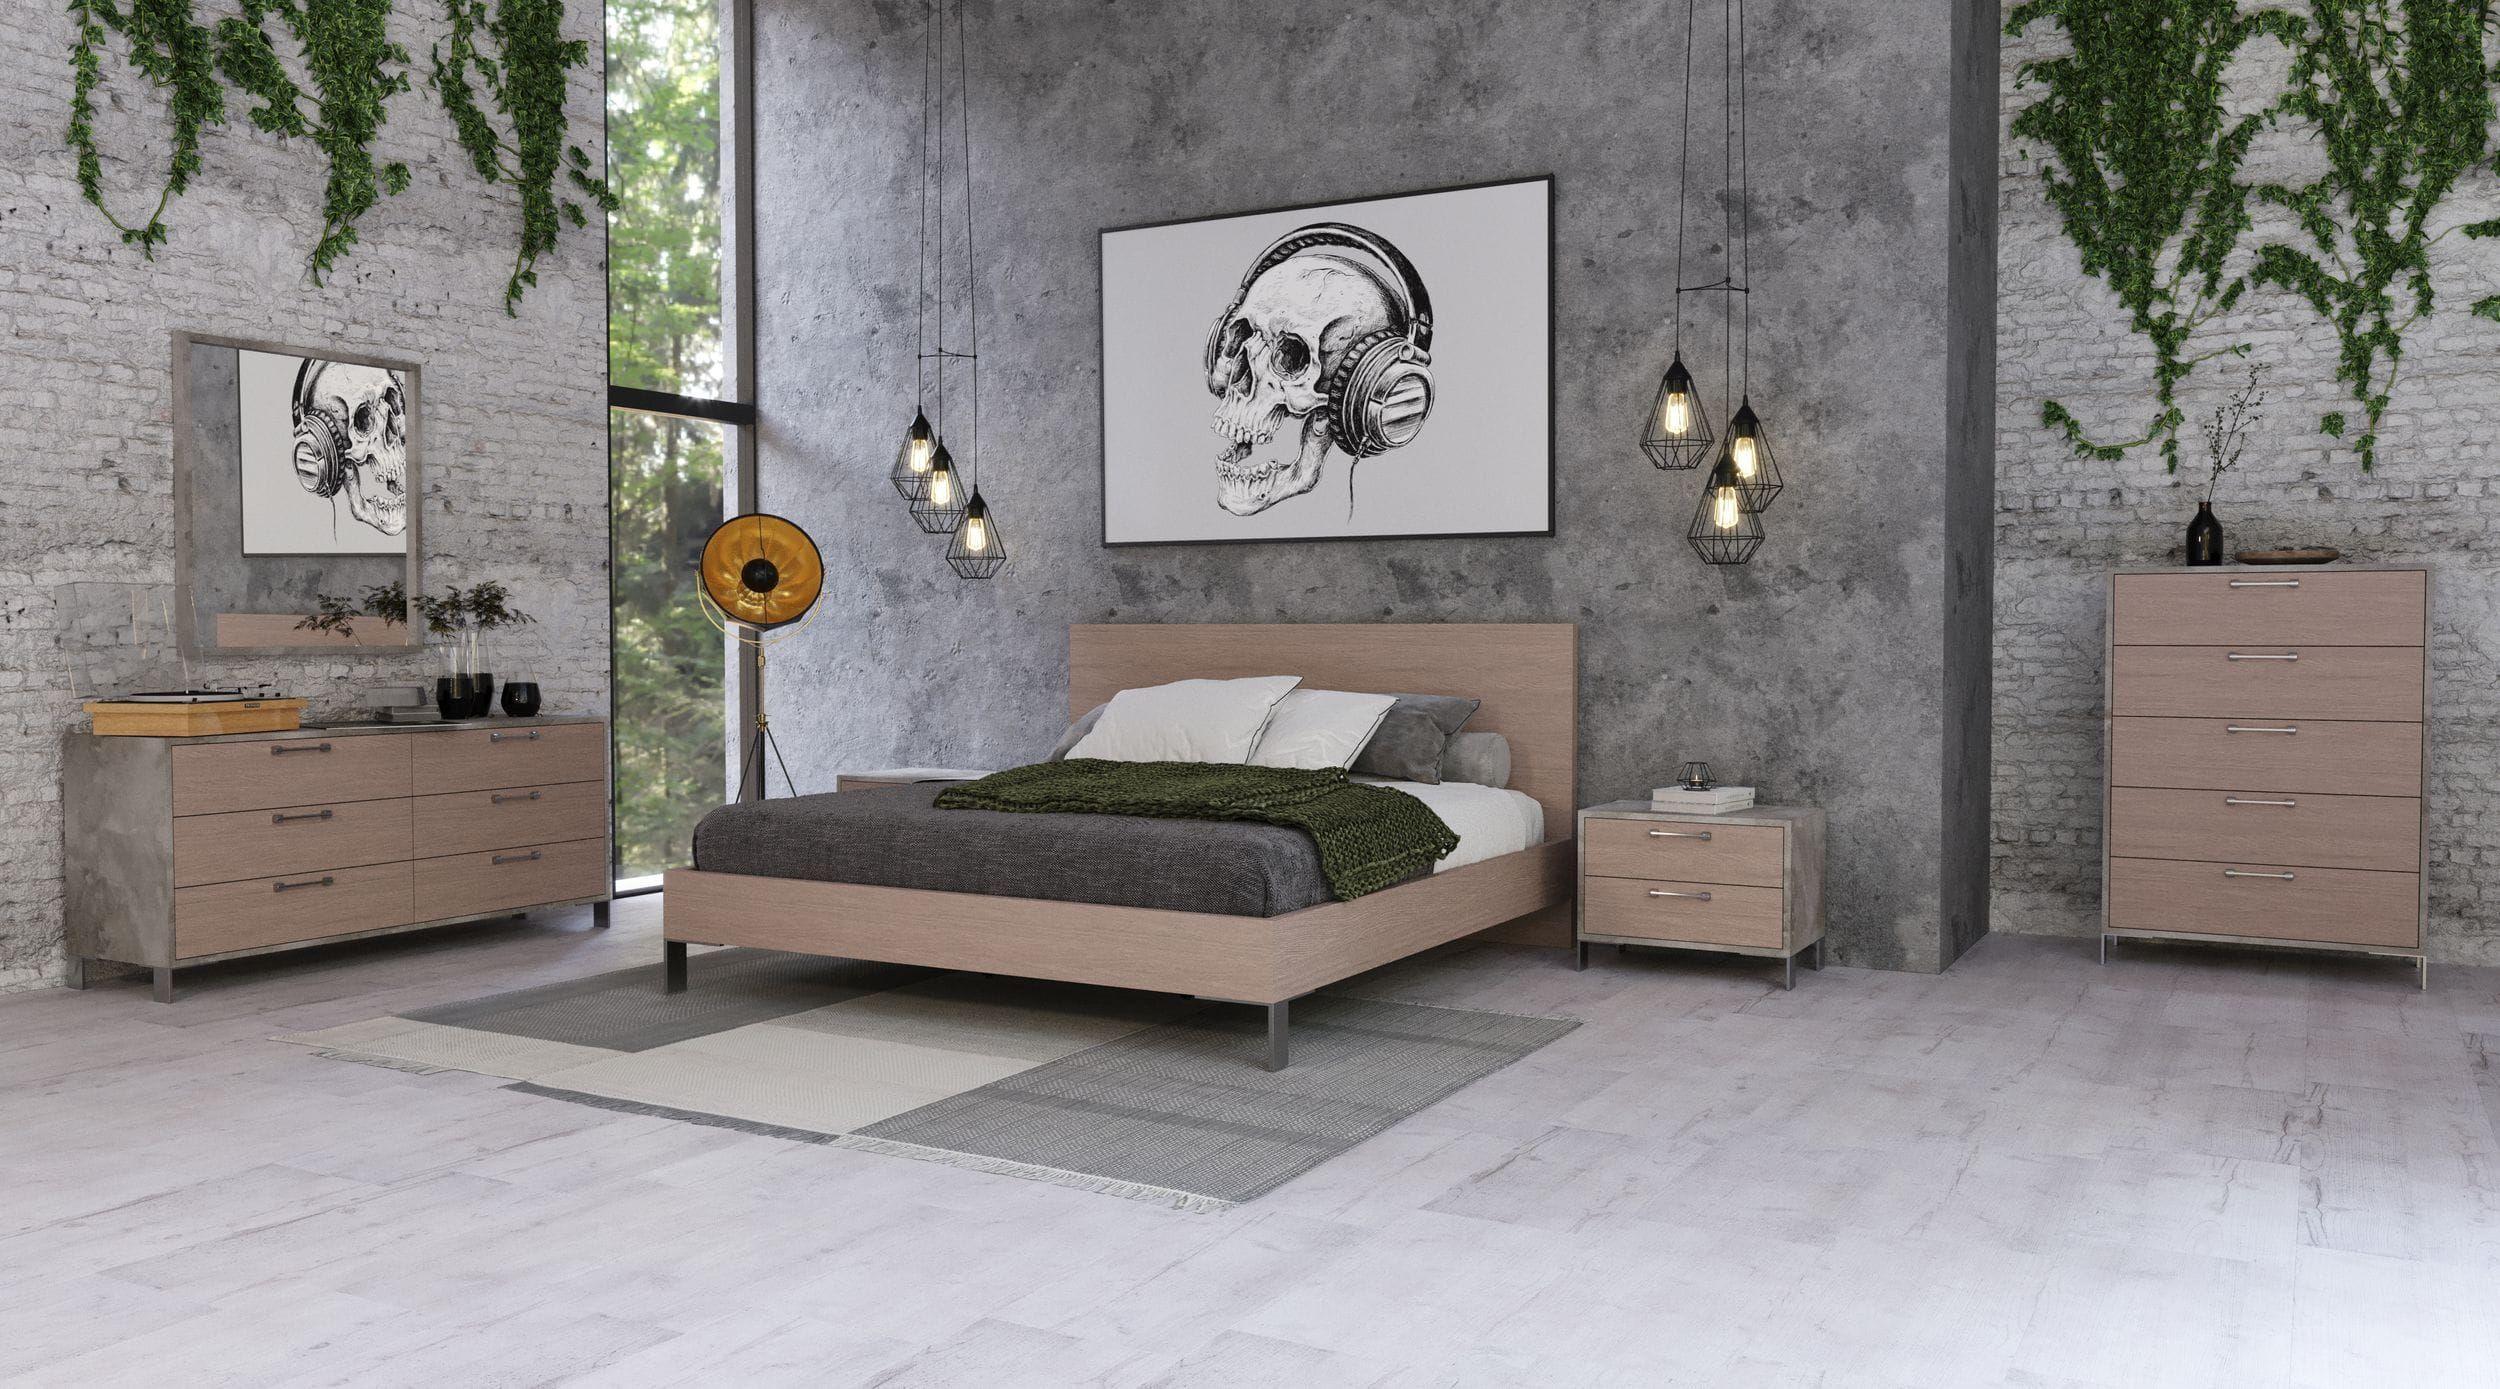 

    
Light Oak & Brushed Stainless Steel Queen Panel Bedroom Set 6Pcs by VIG Nova Domus Boston
